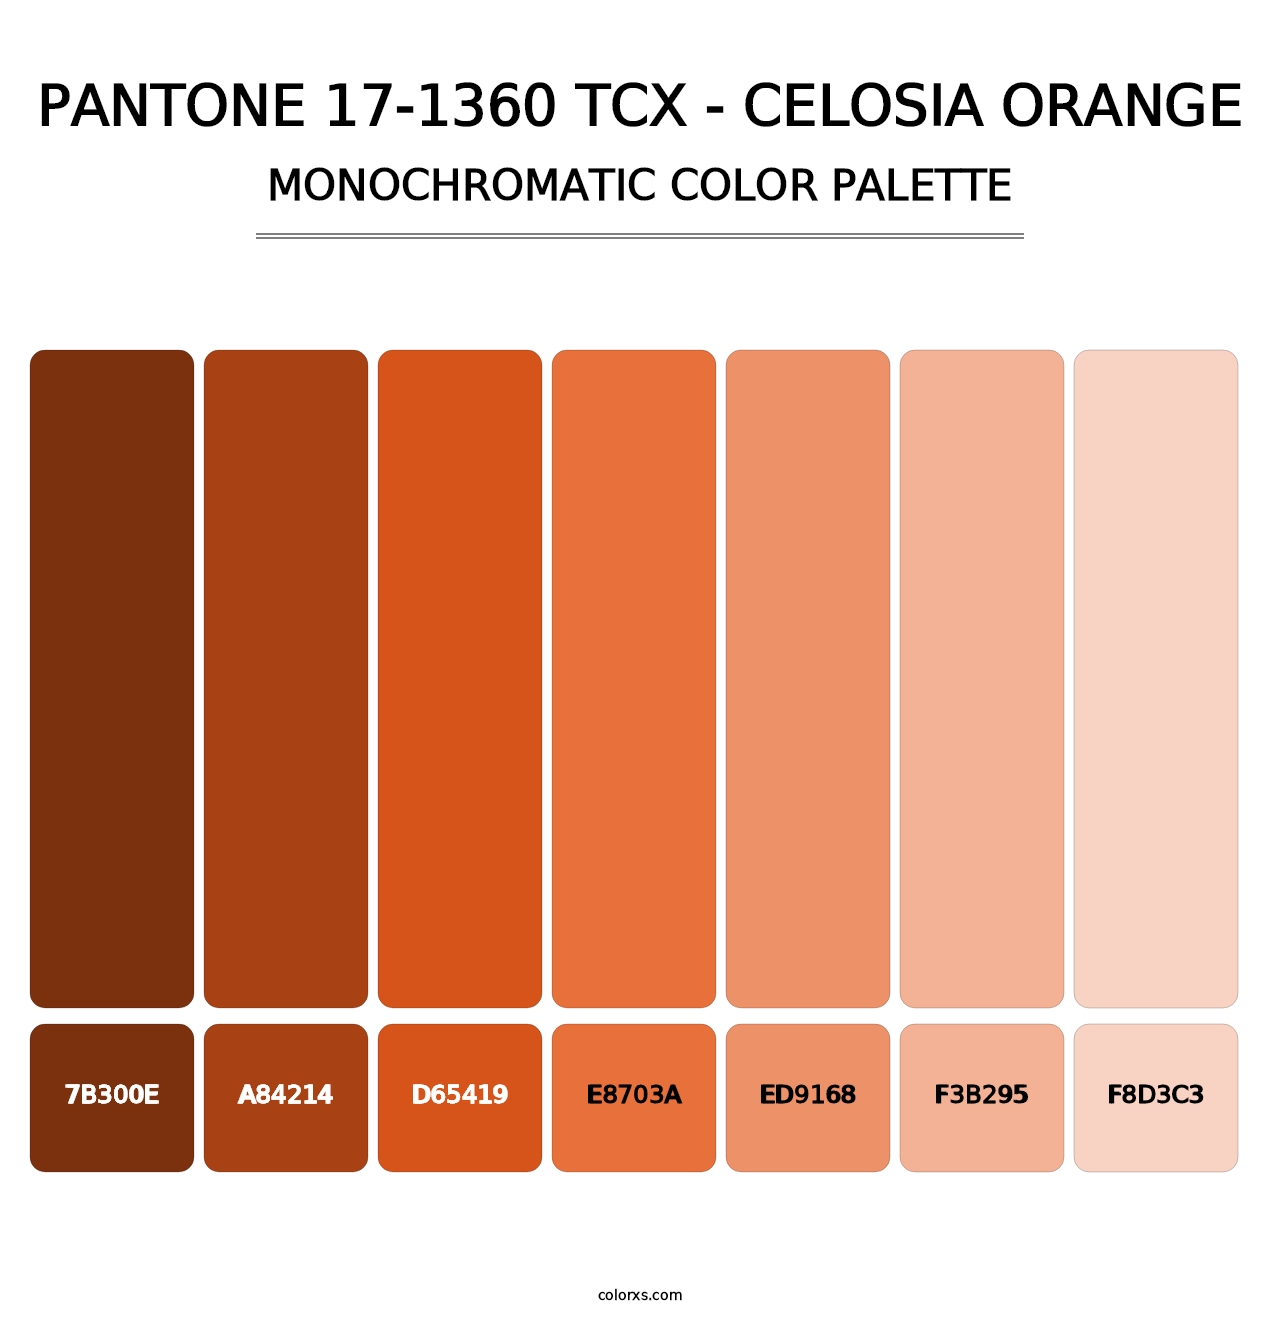 PANTONE 17-1360 TCX - Celosia Orange - Monochromatic Color Palette